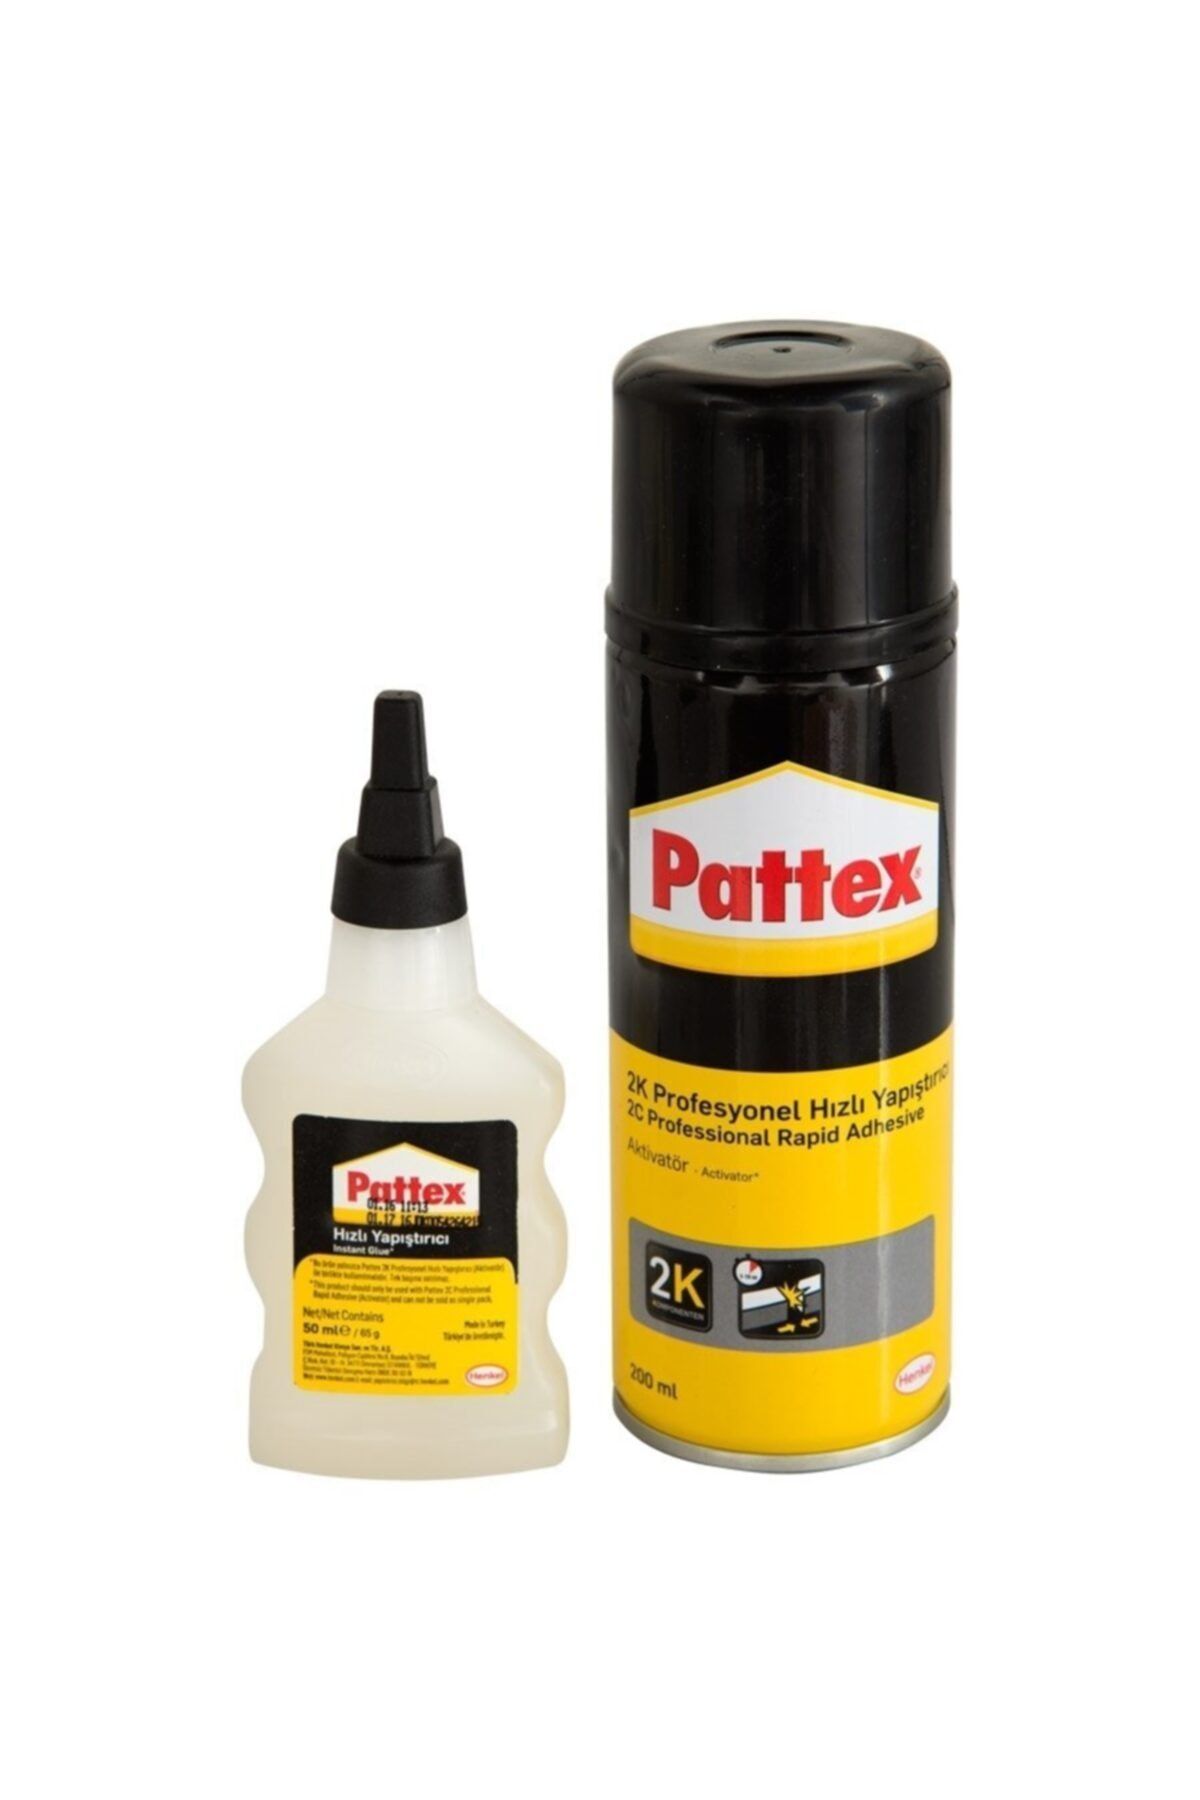 Pattex 2k Hızlı Yapıştırıcı Aktivatör 200 ml